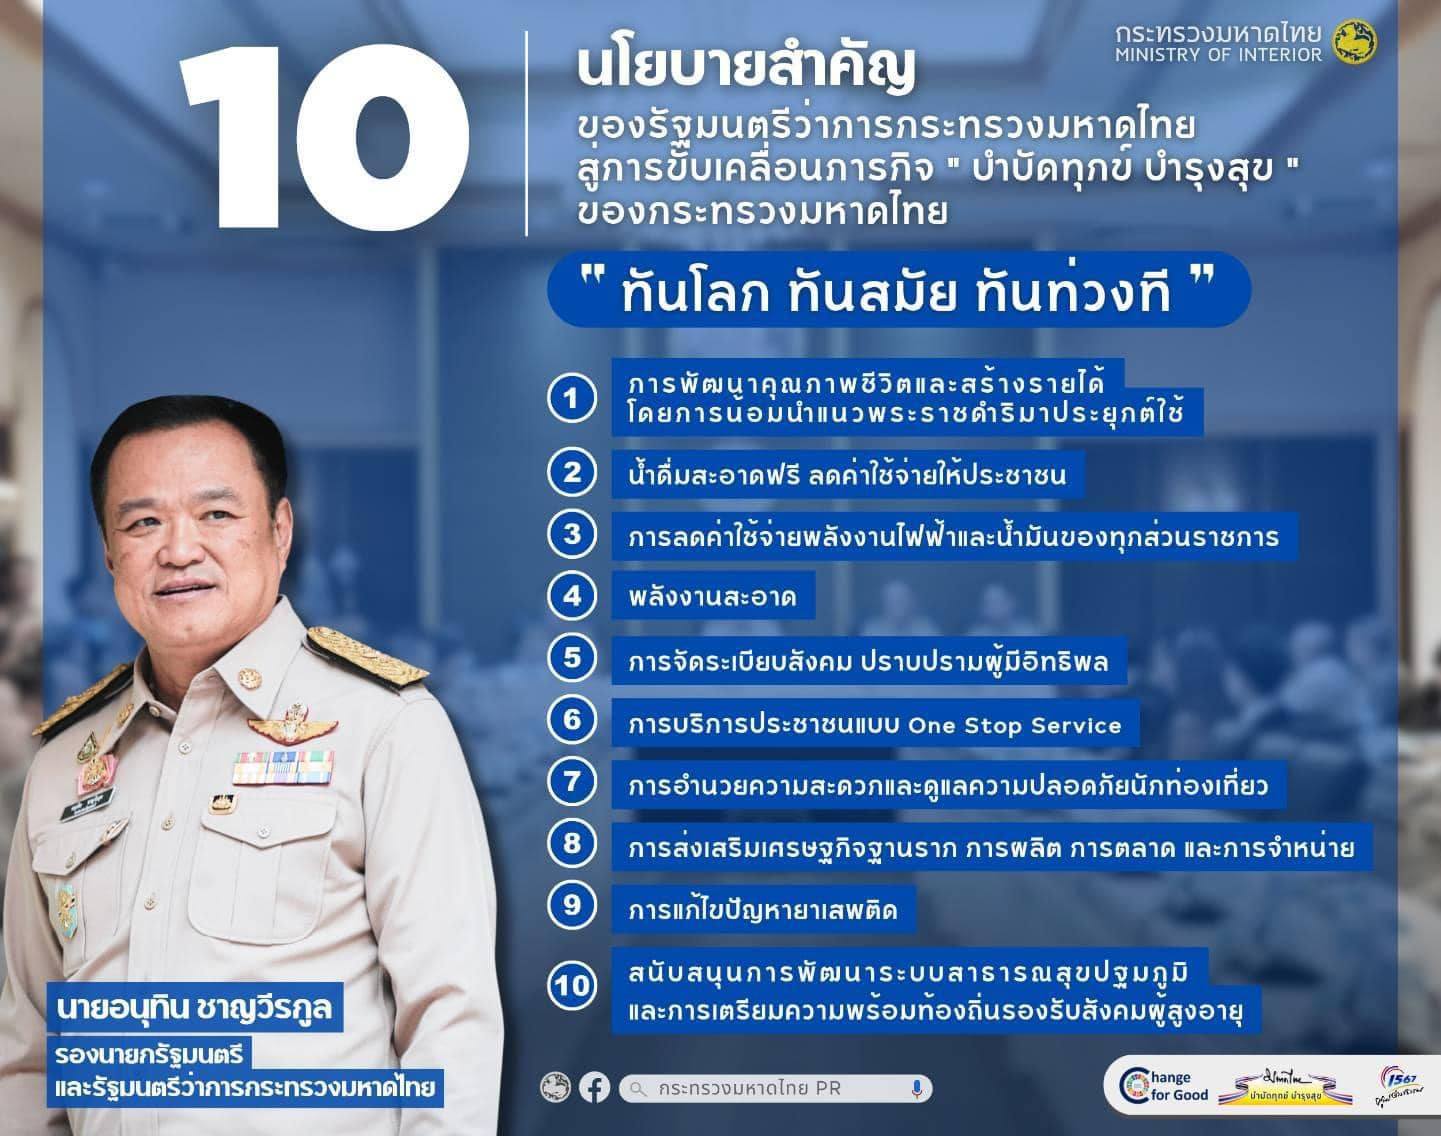 การมอบนโยบายของ นายอนุทิน  ชาญวีรกูล รองนายกรัฐมนตรี และรัฐมนตรีว่าการกระทรวงมหาดไทย 18 ก.ย. 2566